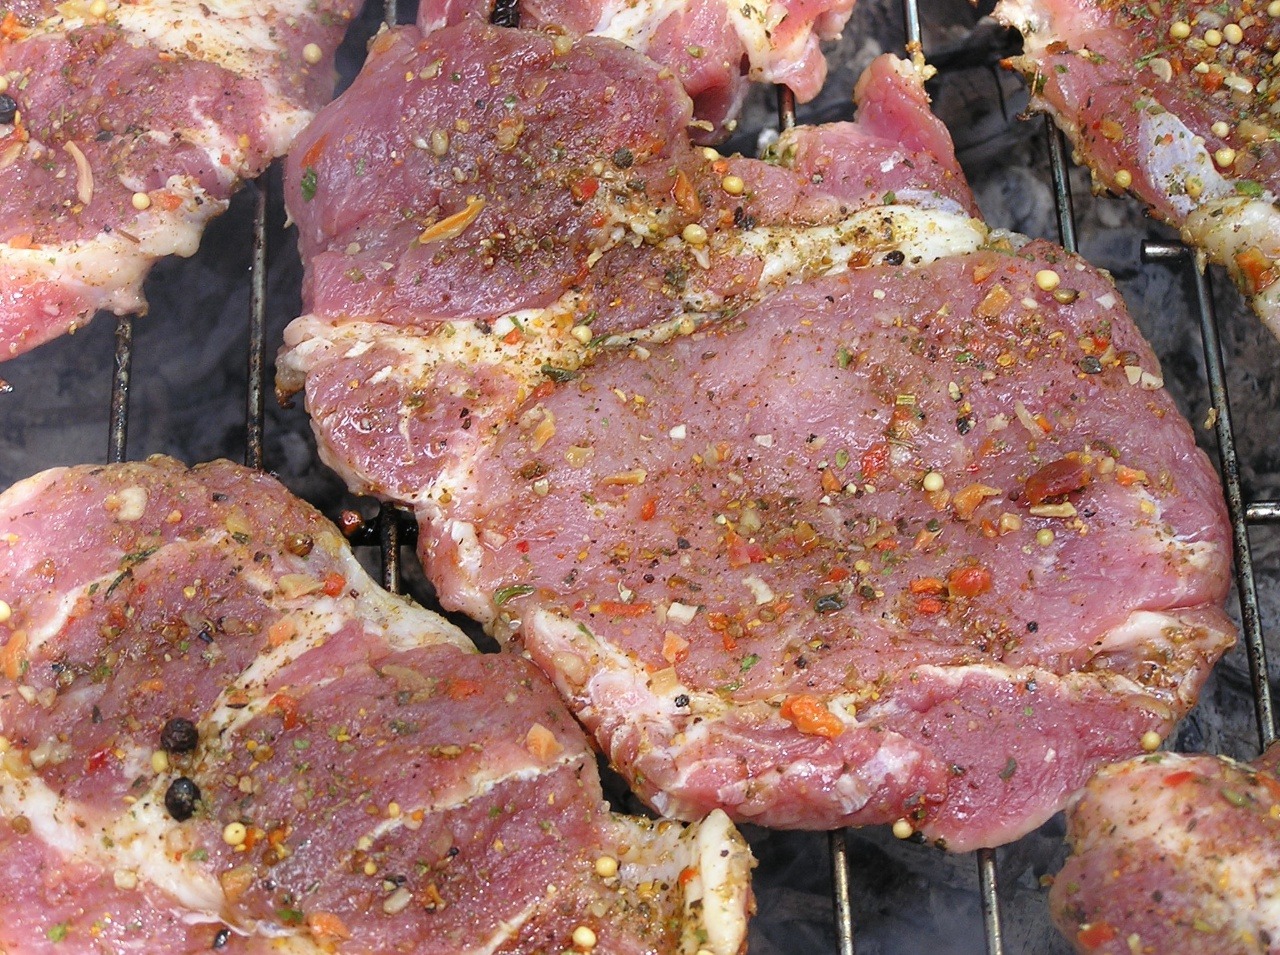 Steak, ktorý dnes bežne jedávame, sa kedysi dával do hrobiek k mŕtvym telám.